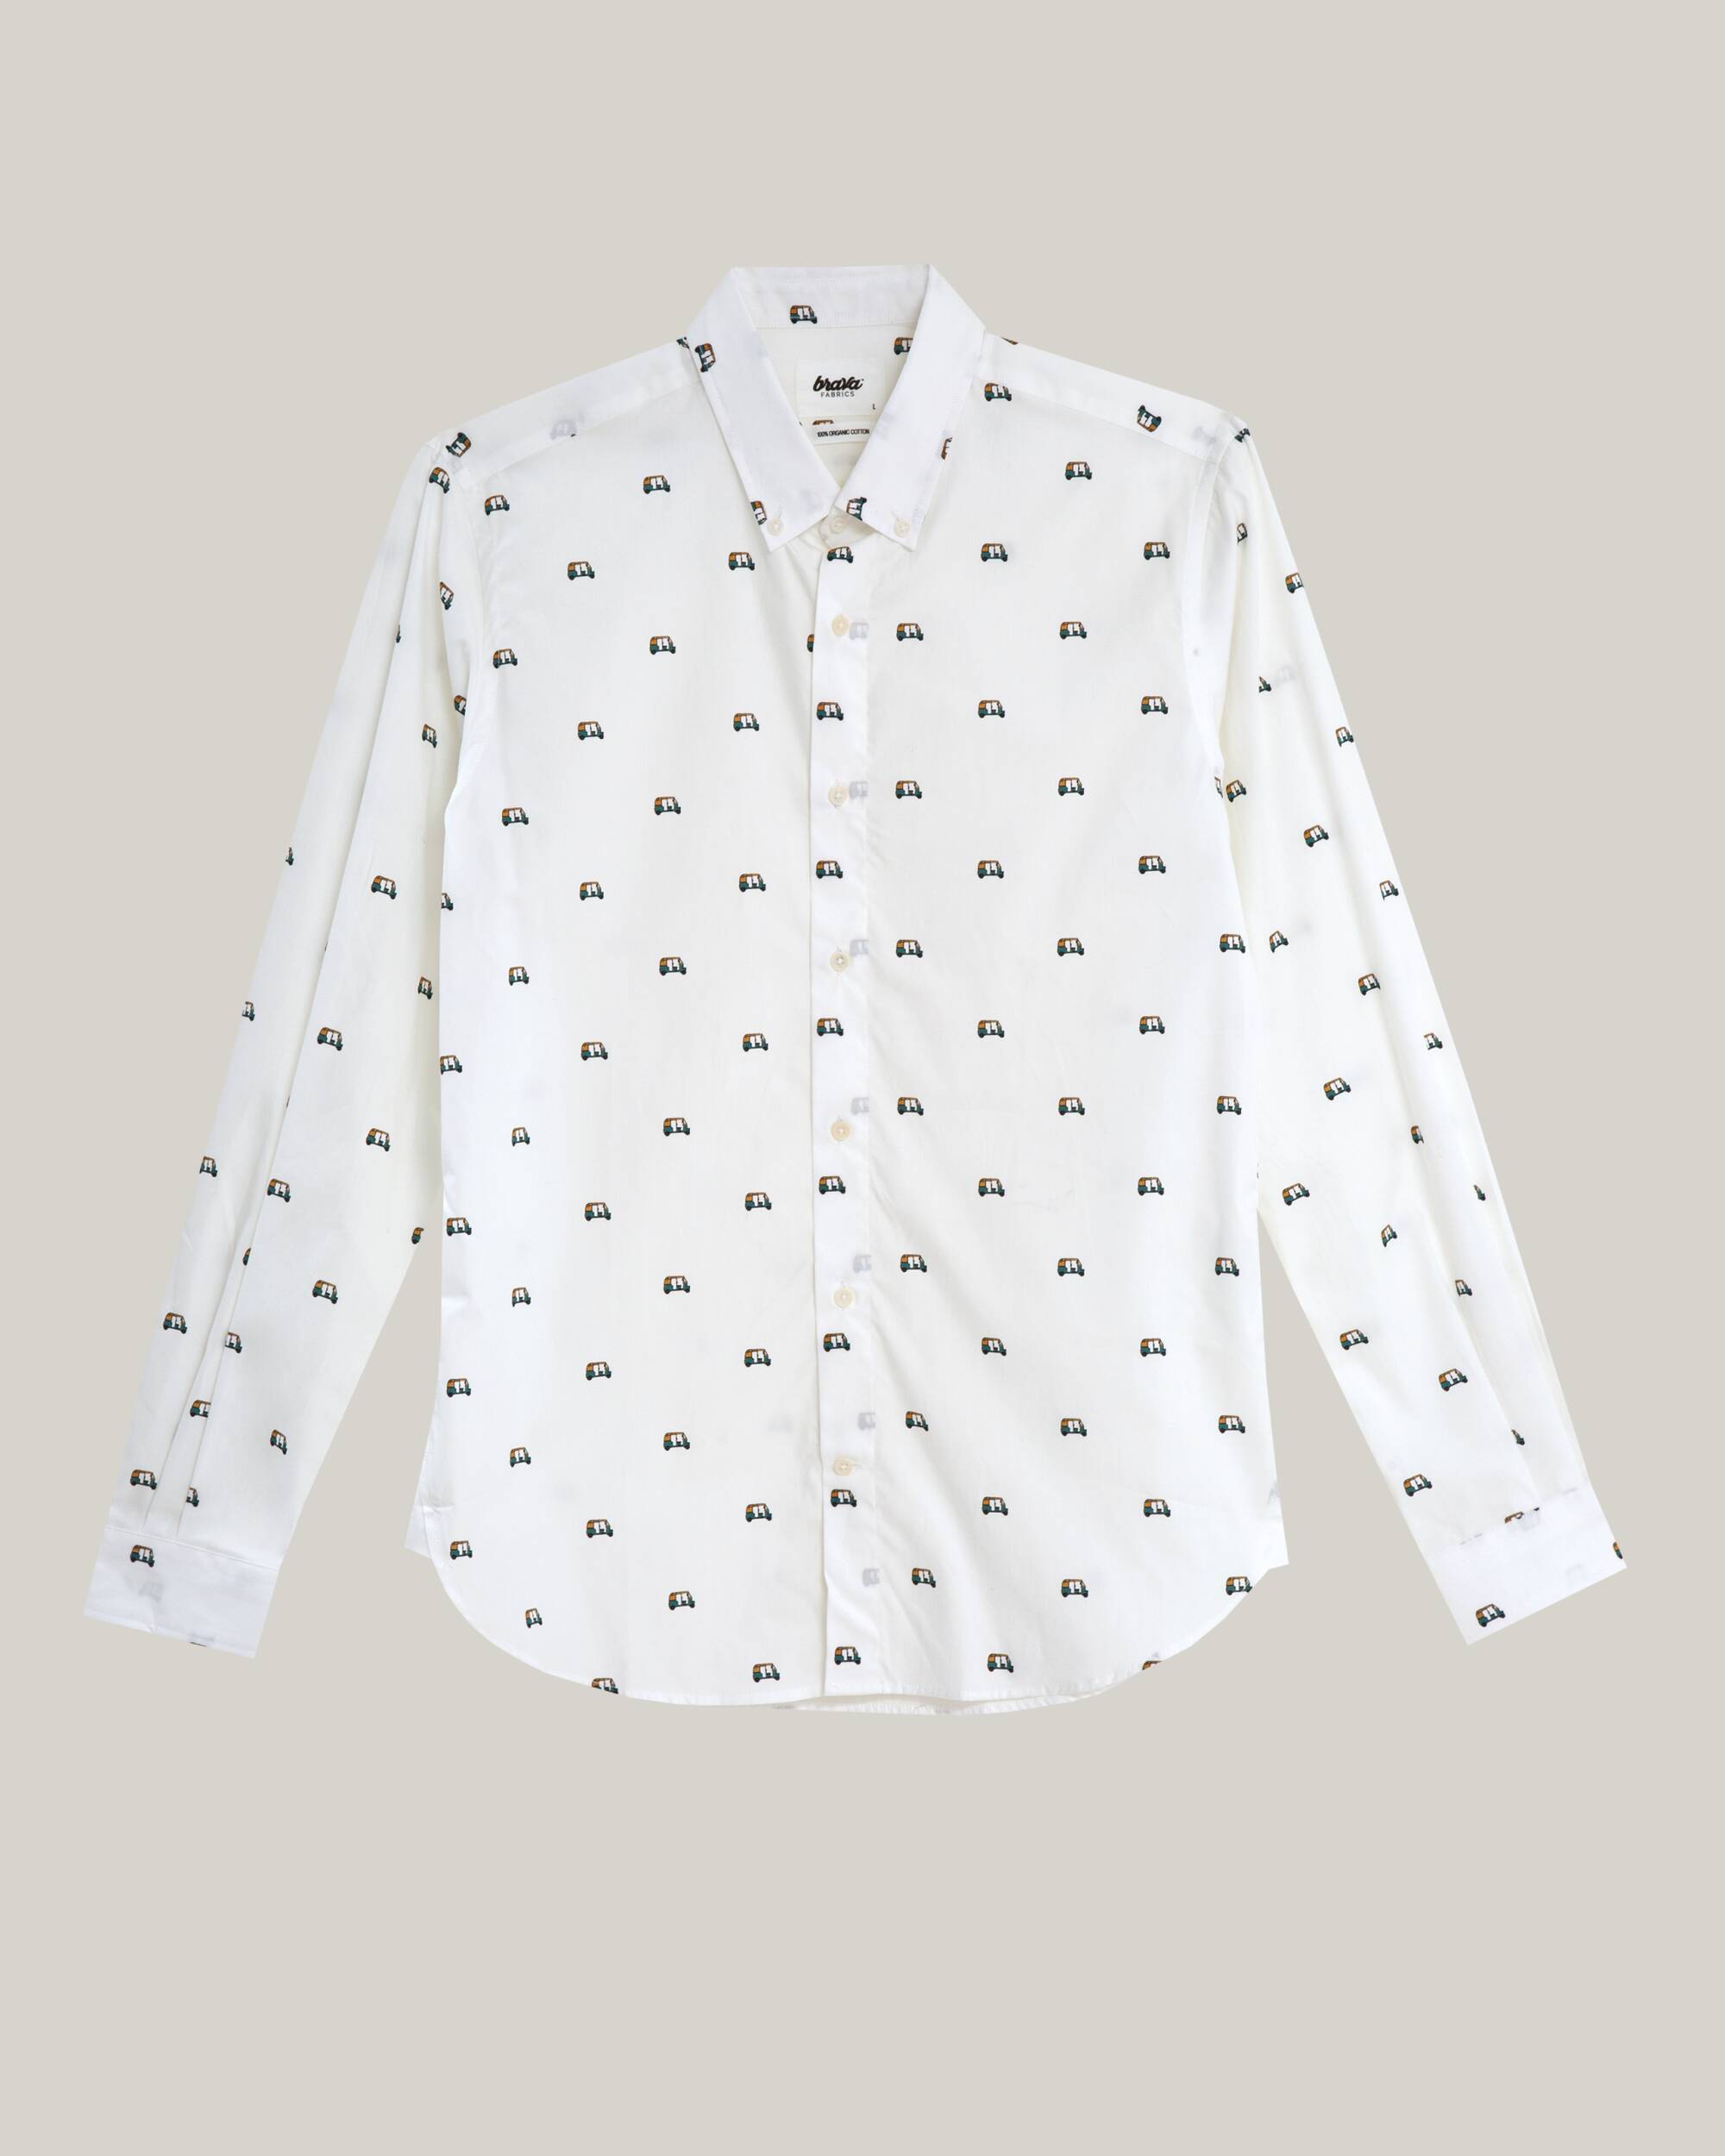 White, printed Tuk Tuk Race shirt made from 100% organic cotton from Brava Fabrics